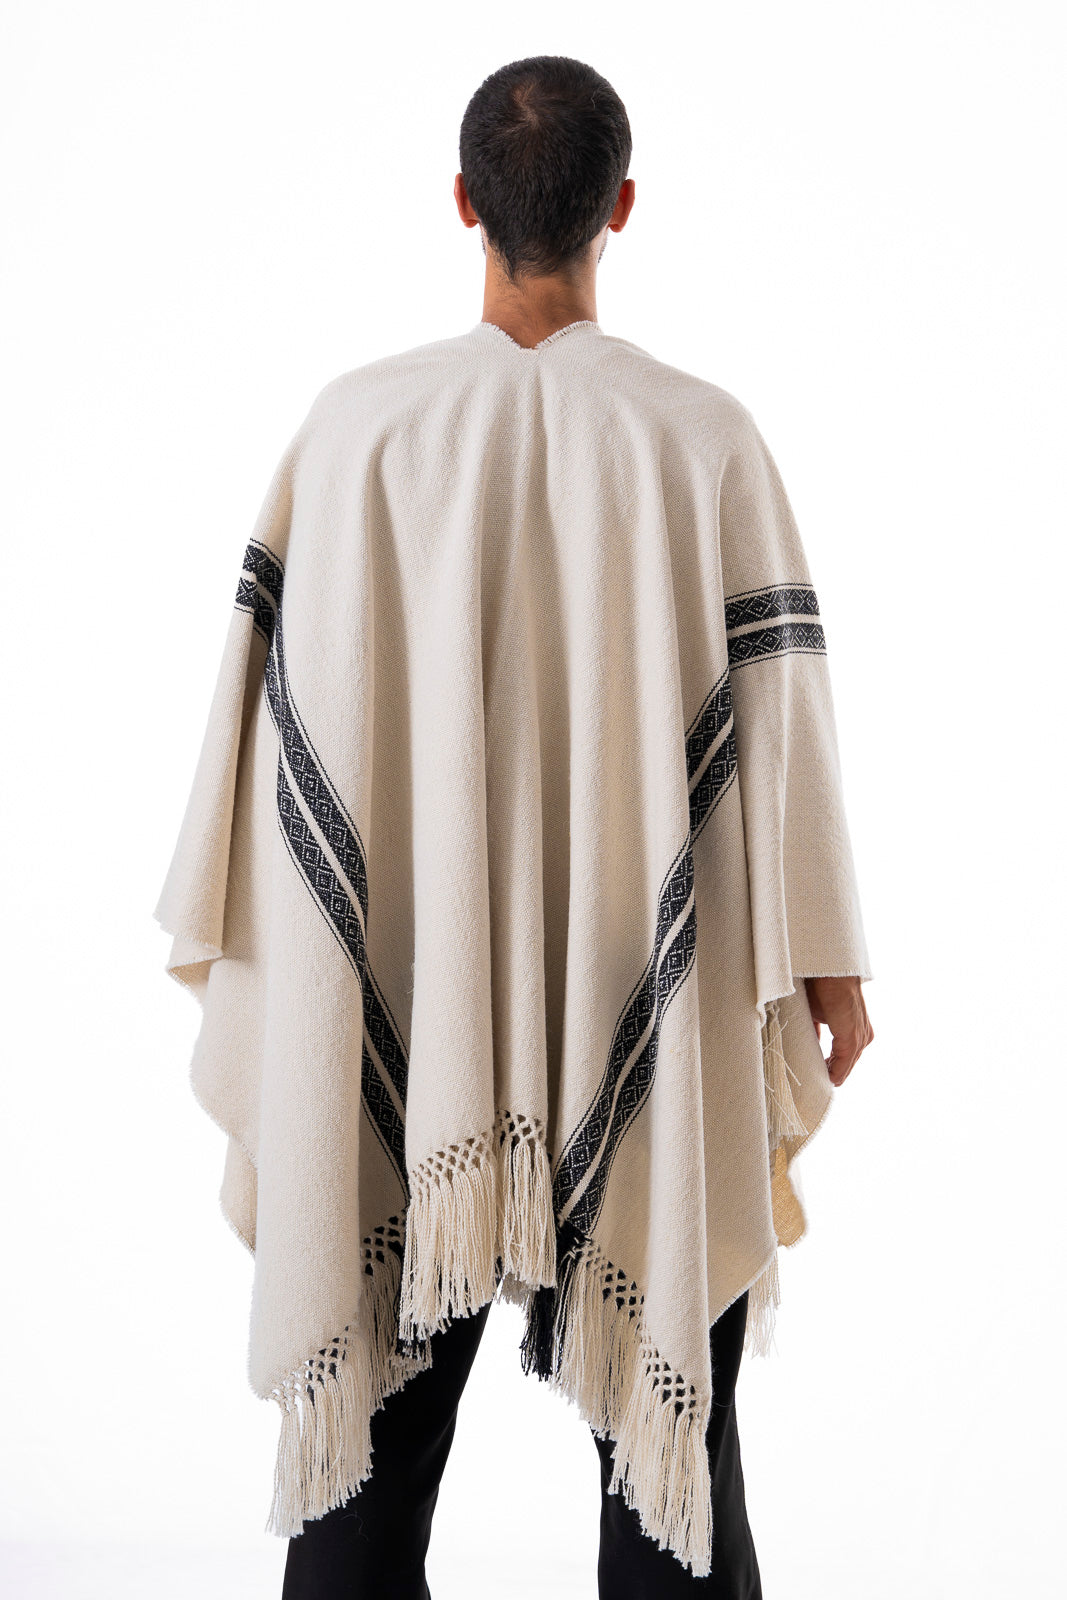 Warmi´s Identity Llama and Sheep Fabric Poncho.